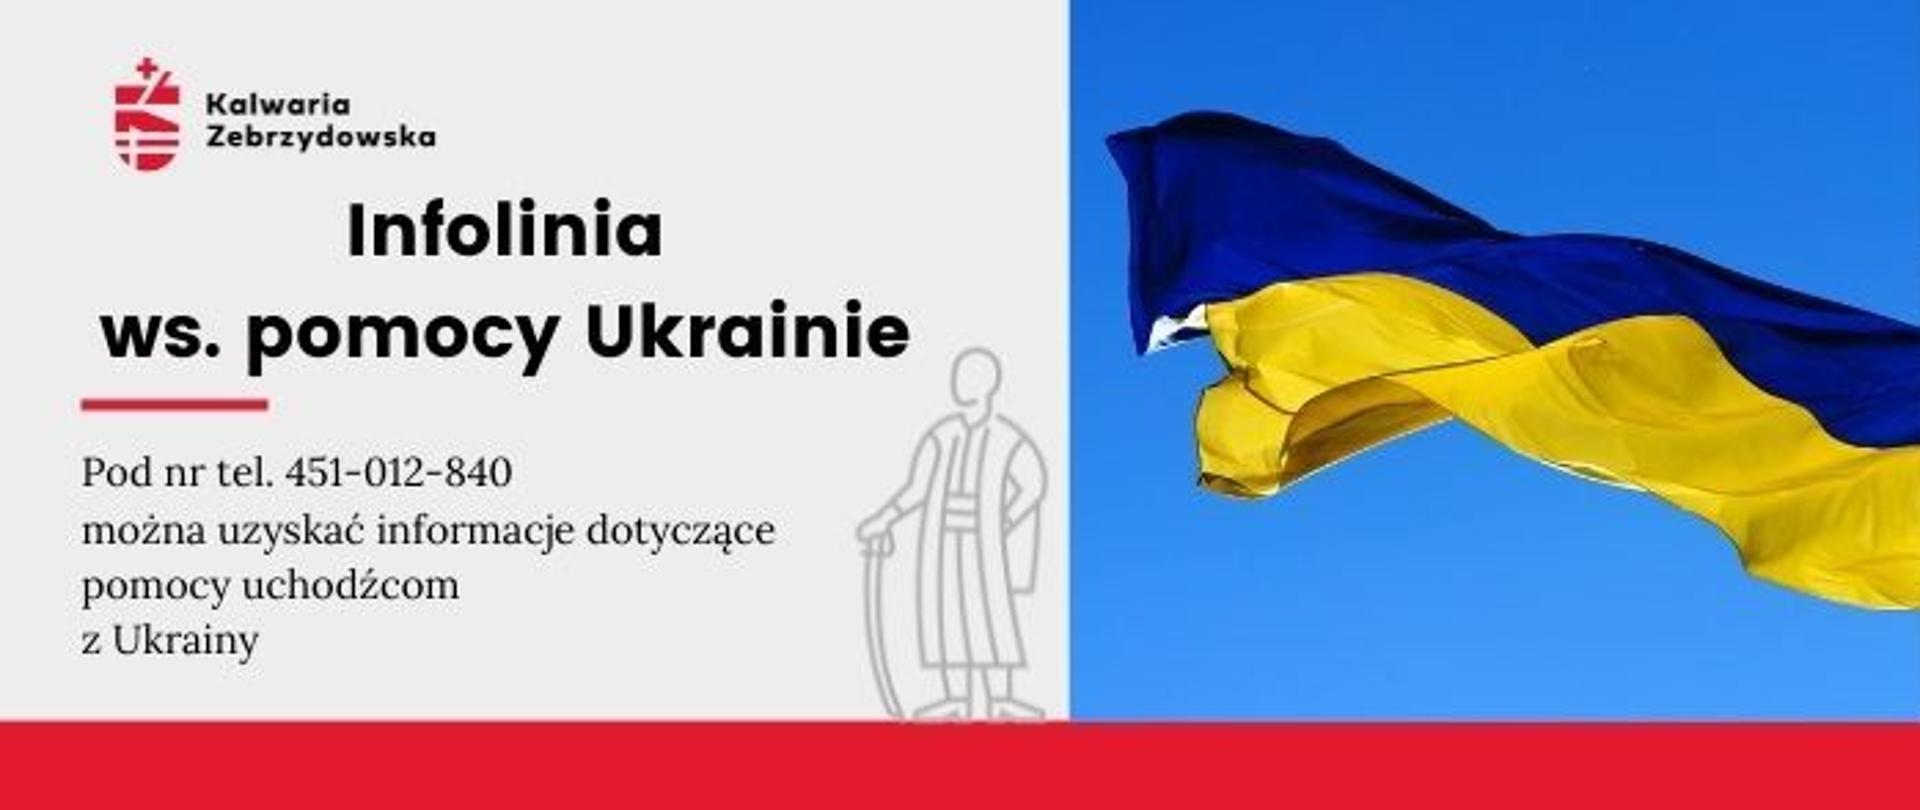 Plansza informacyjna - Infolinia ws. pomocy Ukrainie 